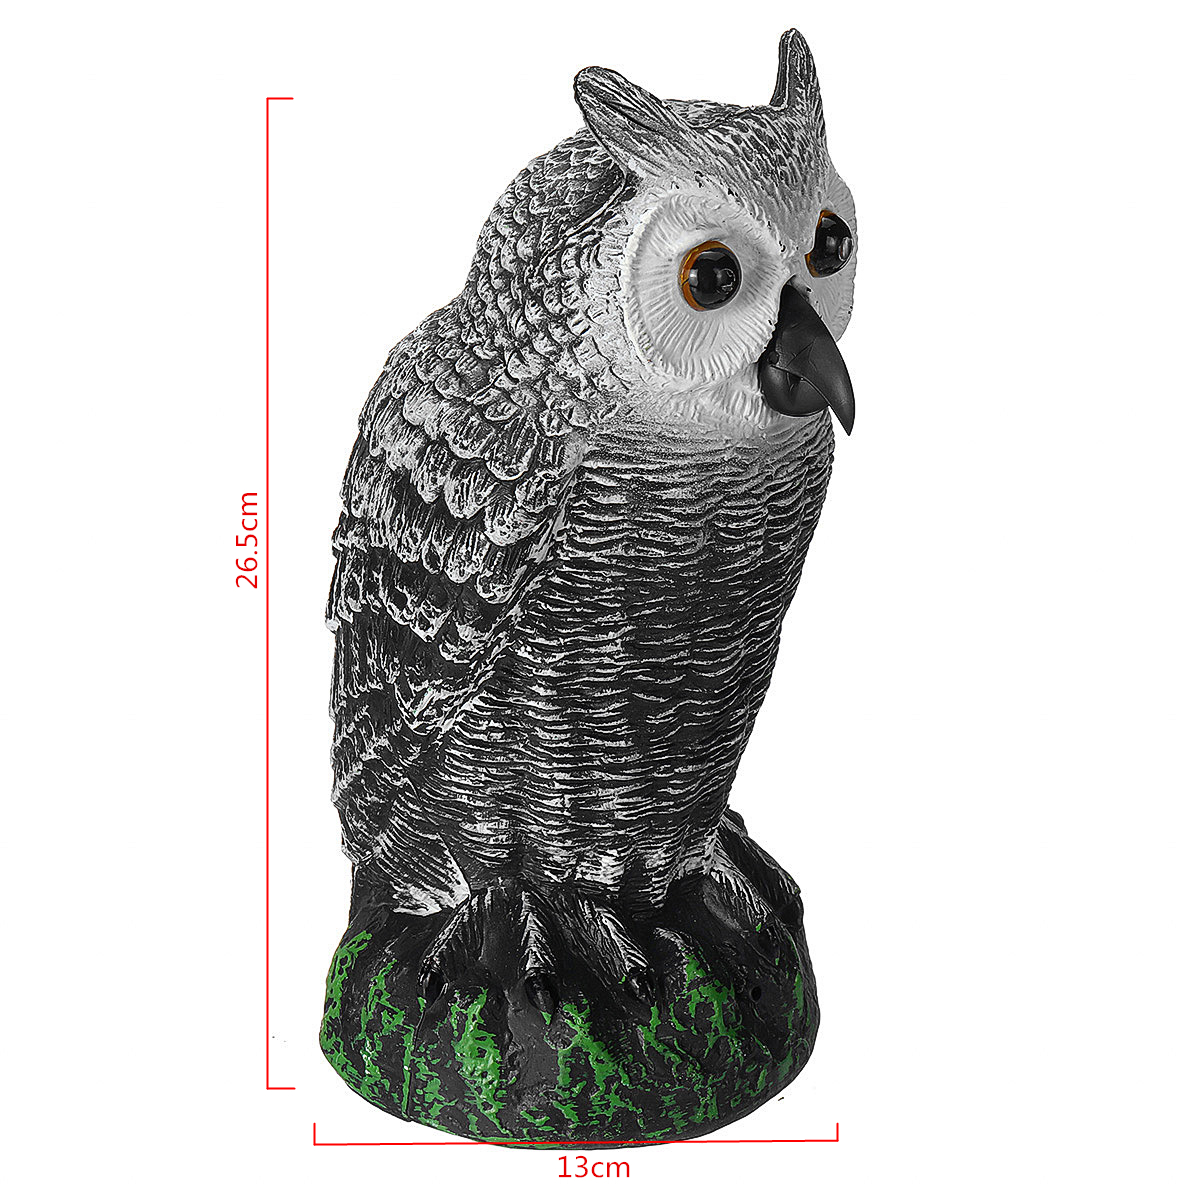 Dummy-Owl-Hunting-Decoy-Glowing-Eyes-Sound-Garden-Decor-1639223-2